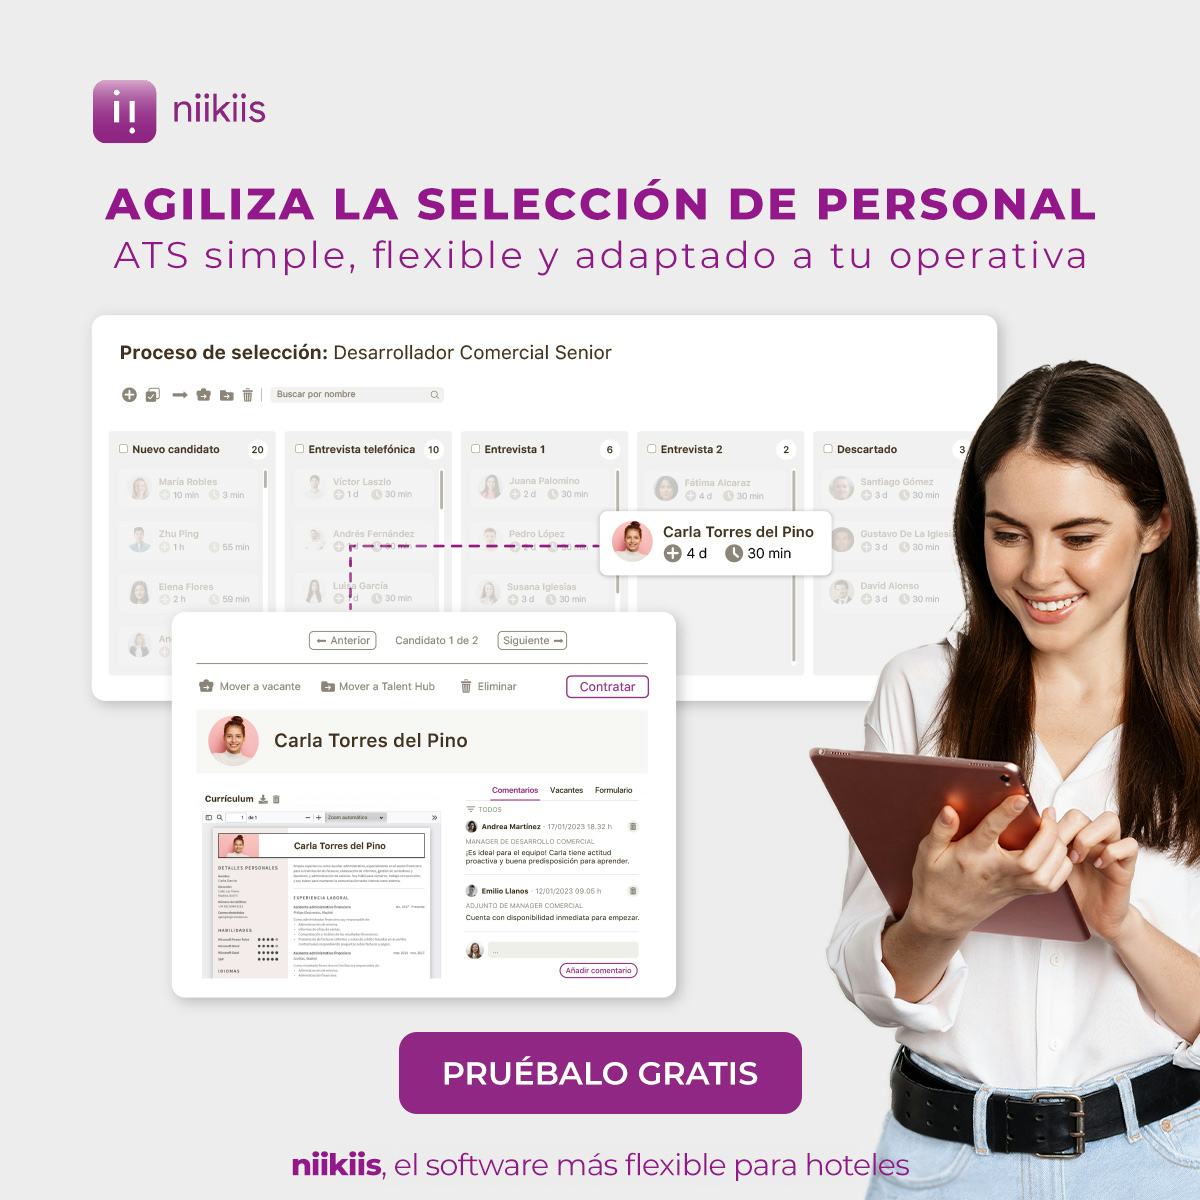 niikiis Software - Software de reclutamiento y selección con ATS flexible, ágil y simple